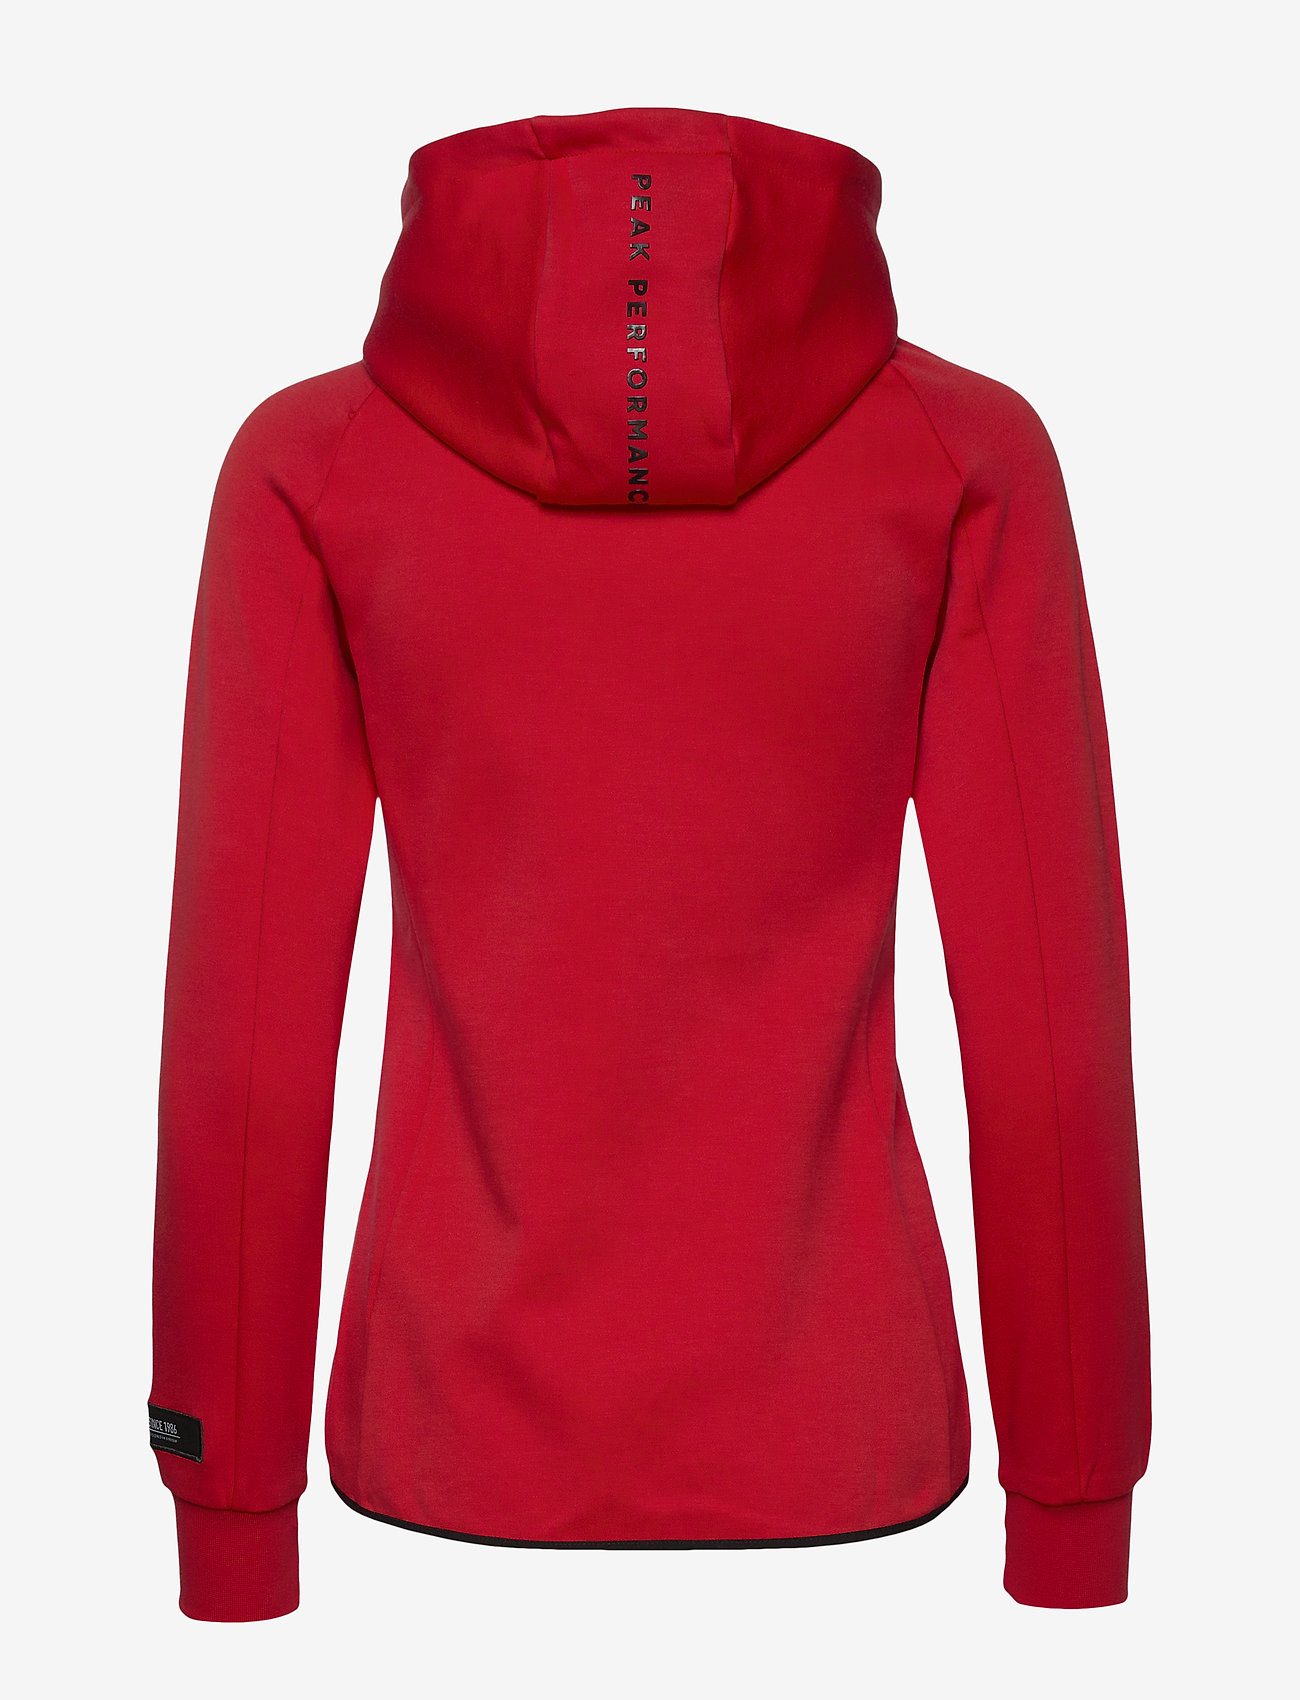 peak performance hoodie red